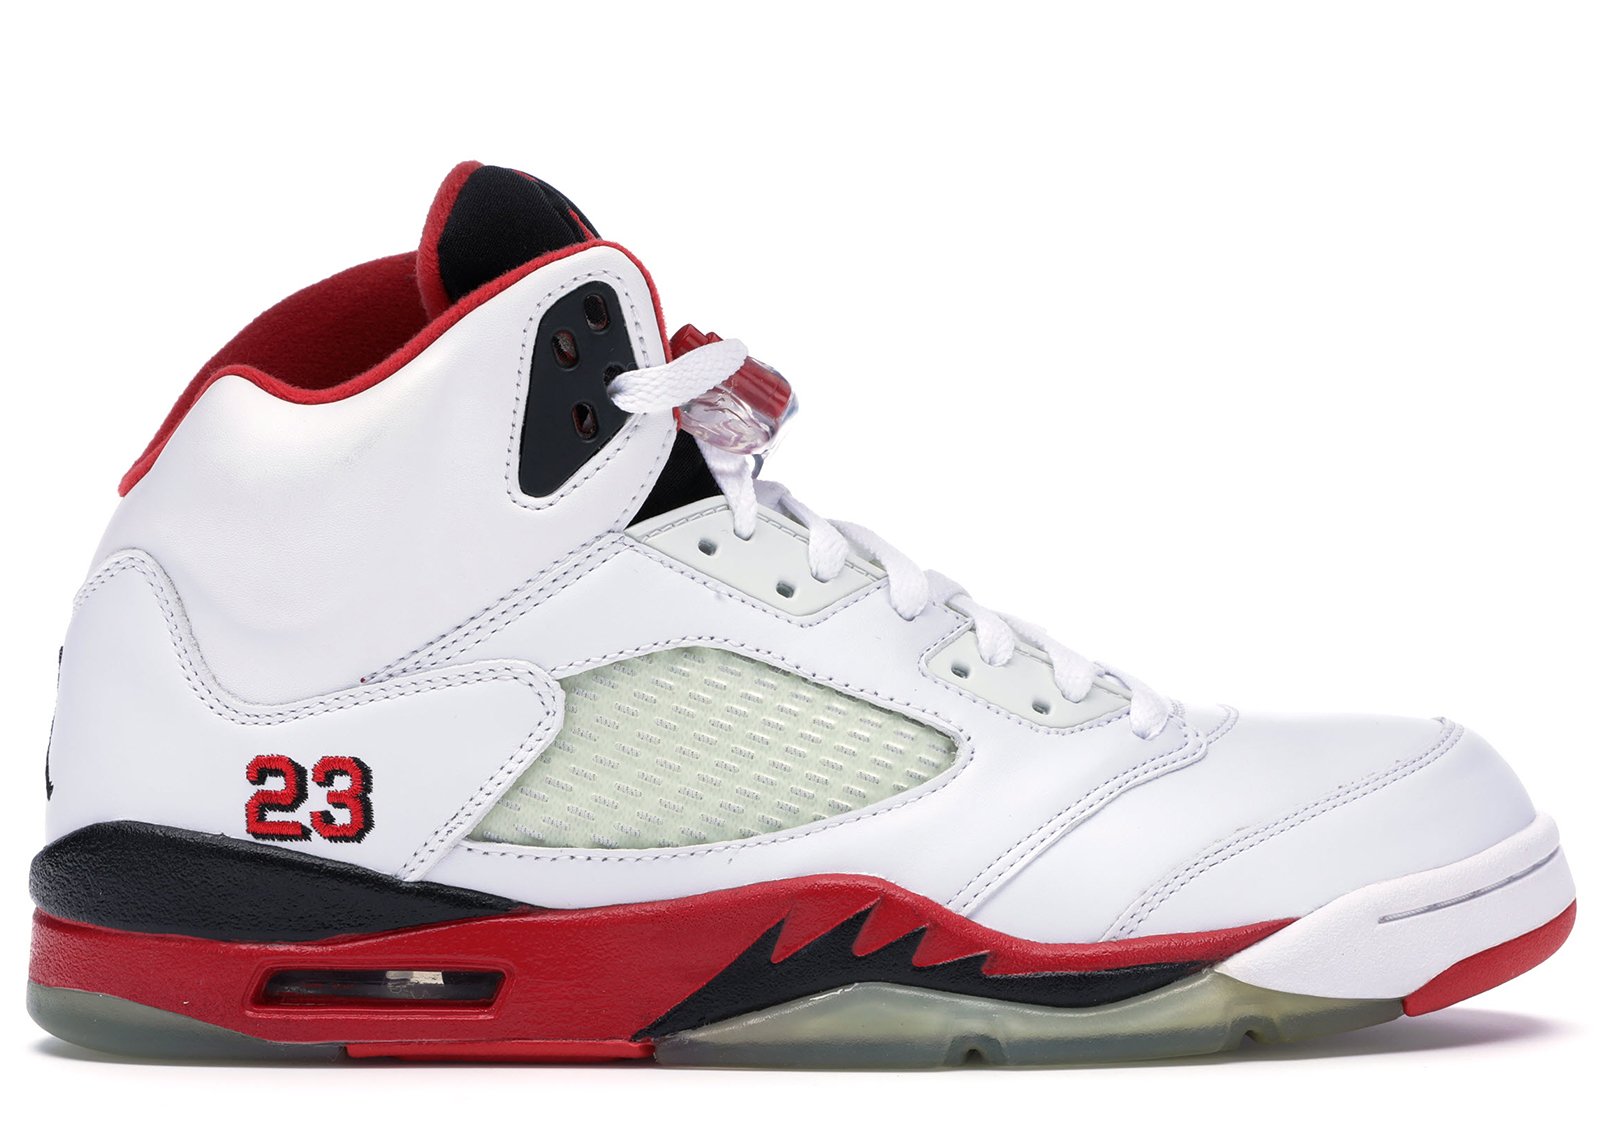 Jordan 5 Retro Fire Red (2006) sneakers